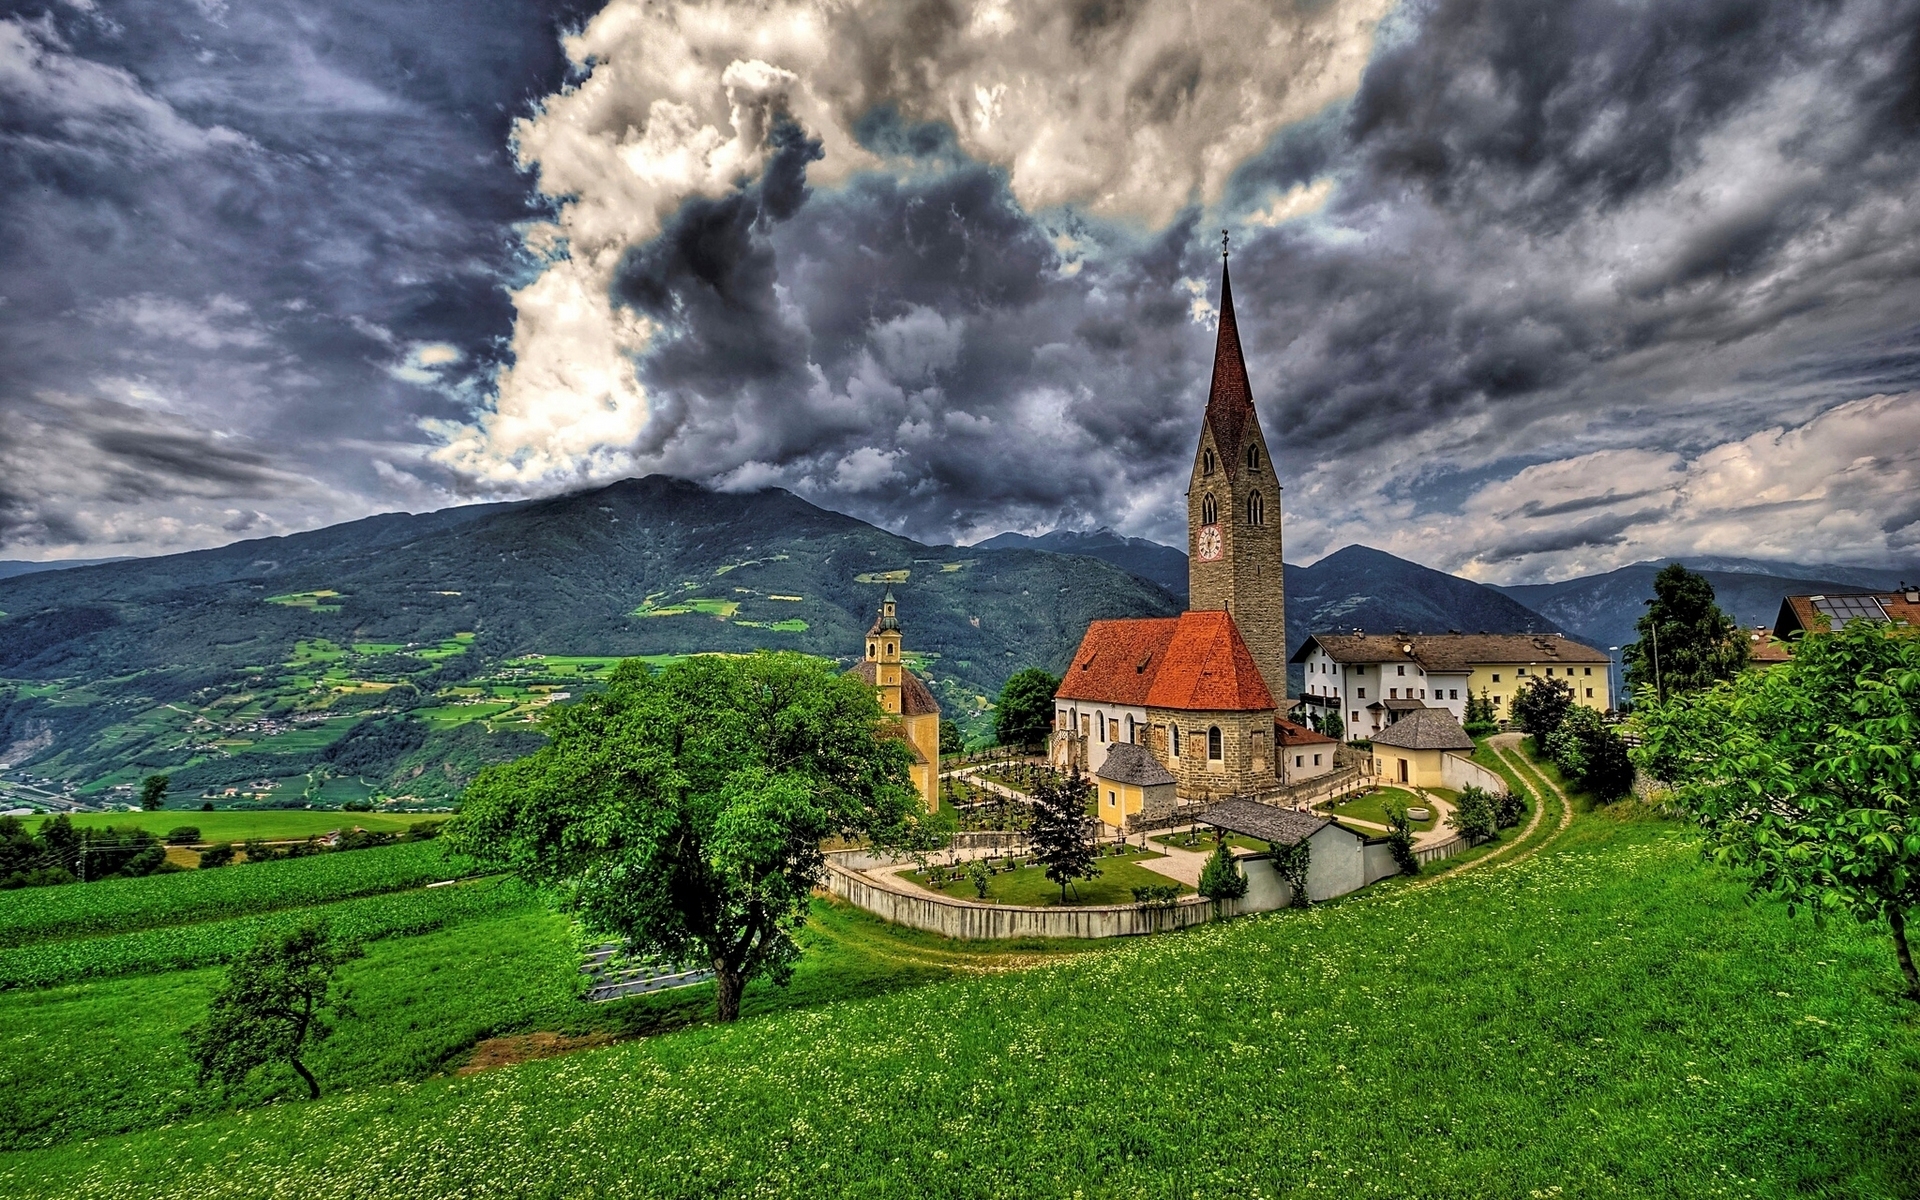 Saint Michael Church Brixen for 1920 x 1200 widescreen resolution